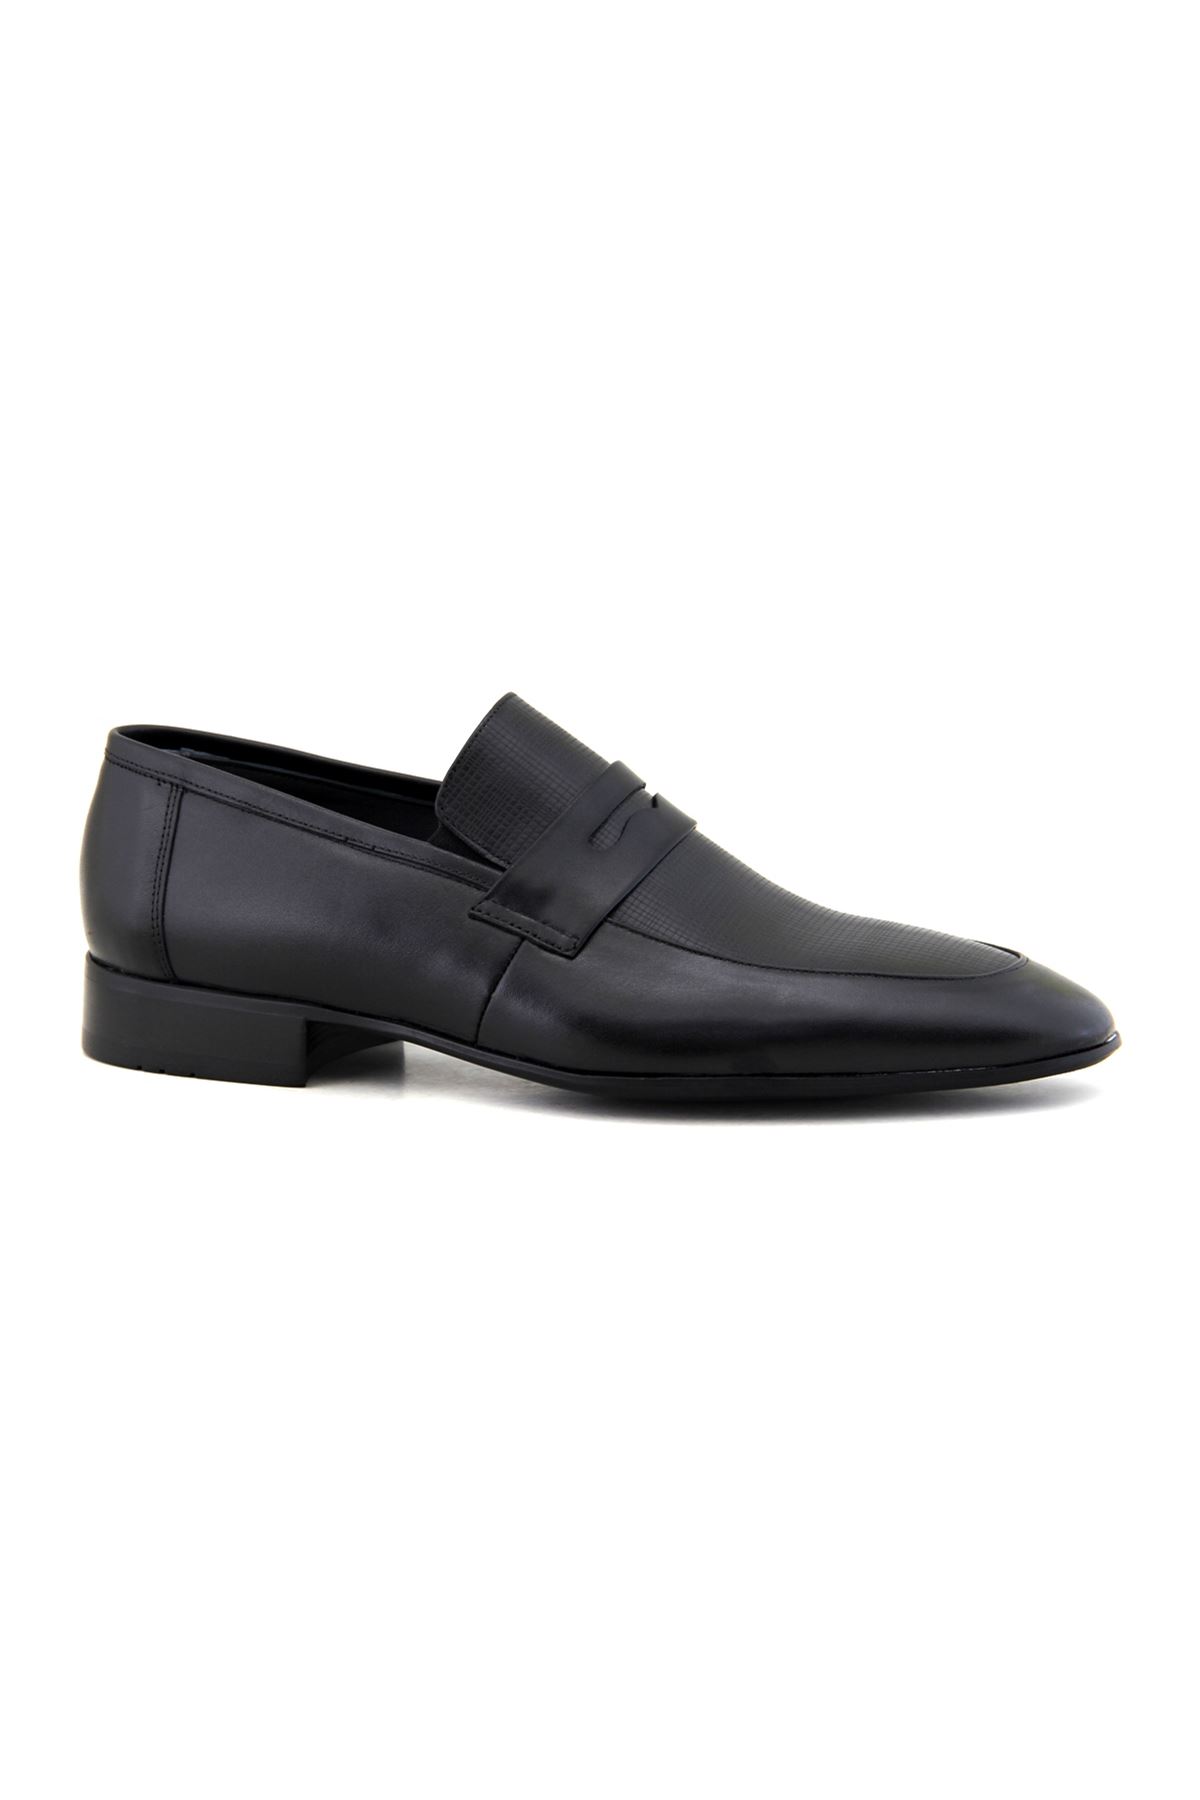 Fosco 2061 Hakiki Deri Klasik Erkek Ayakkabı - Siyah